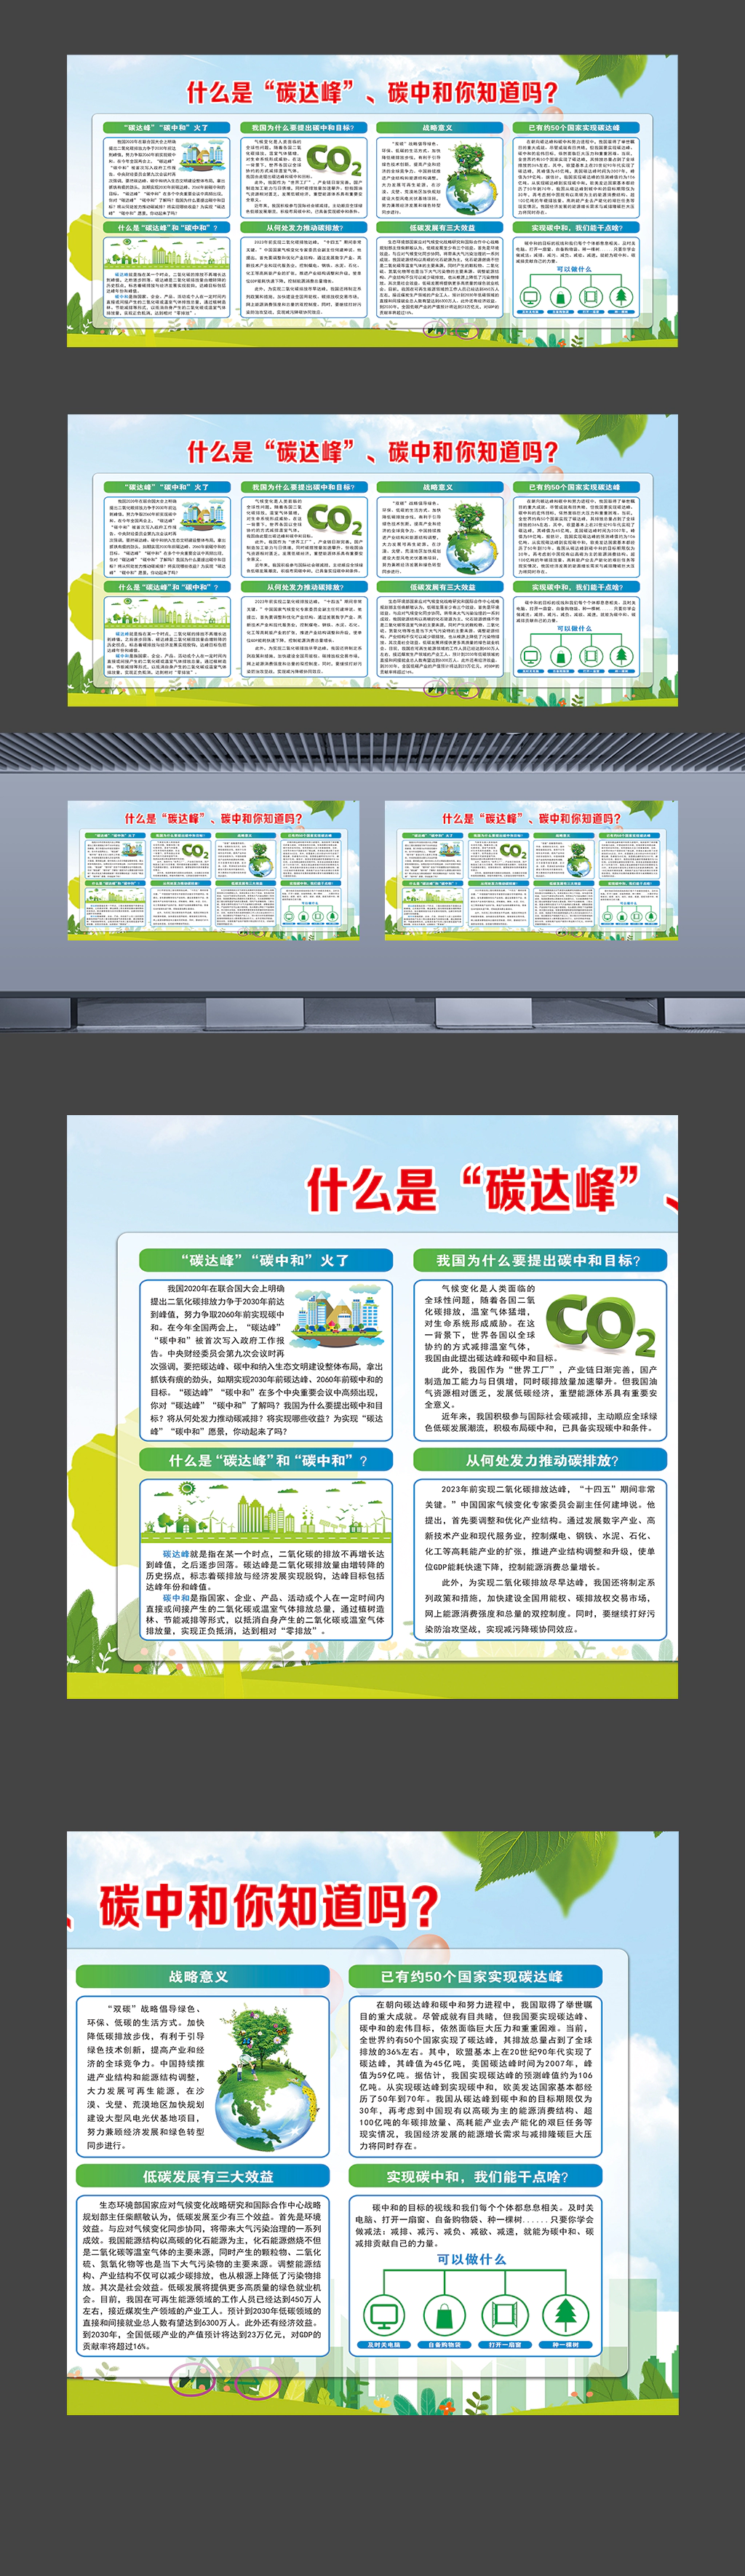 碳达峰碳中和环保知识普及宣传展板